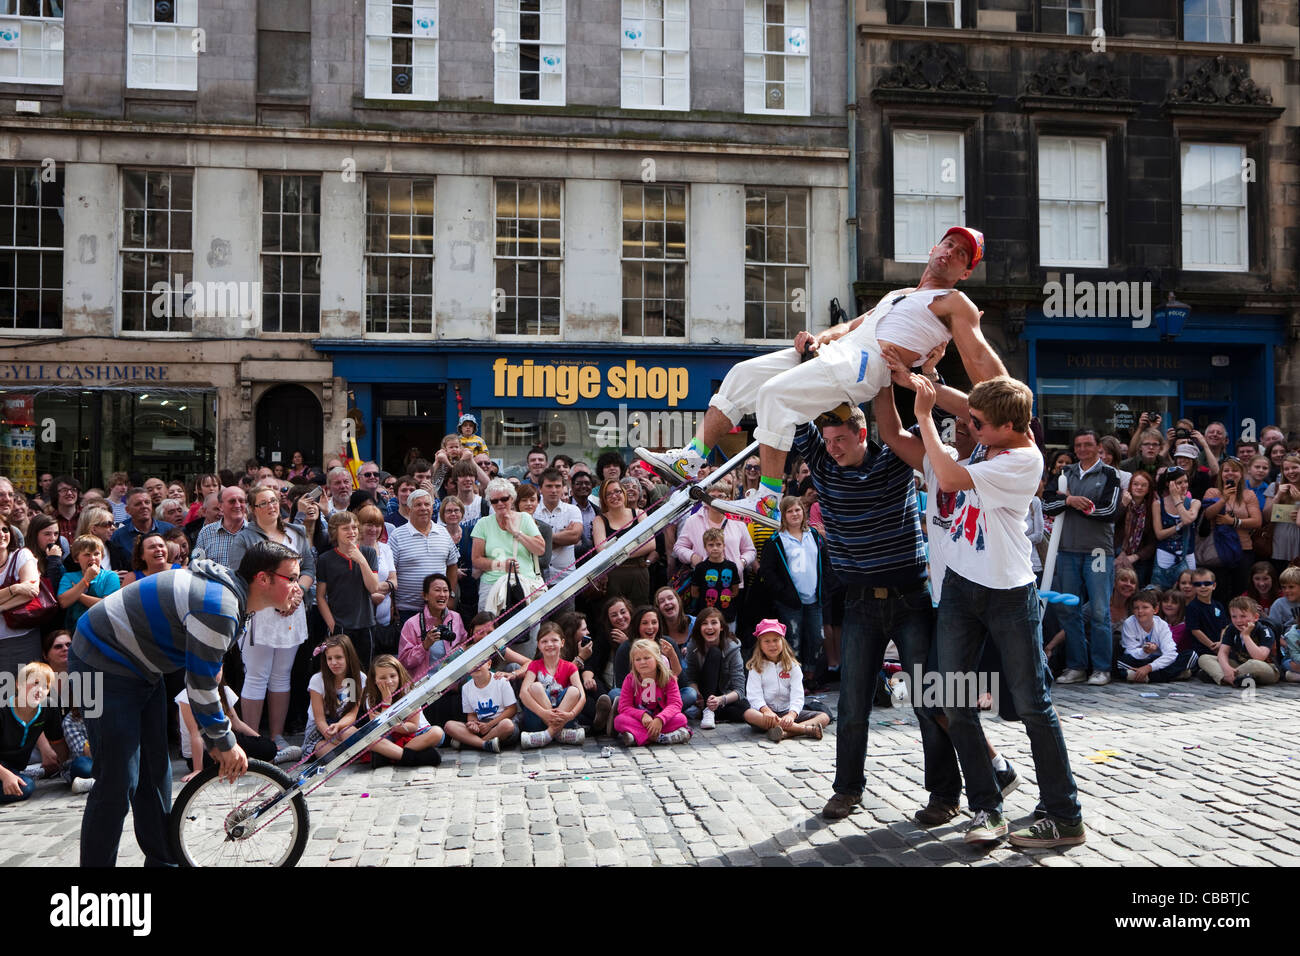 Street actor in High Street, Edinburgh at the Fringe festival Stock Photo